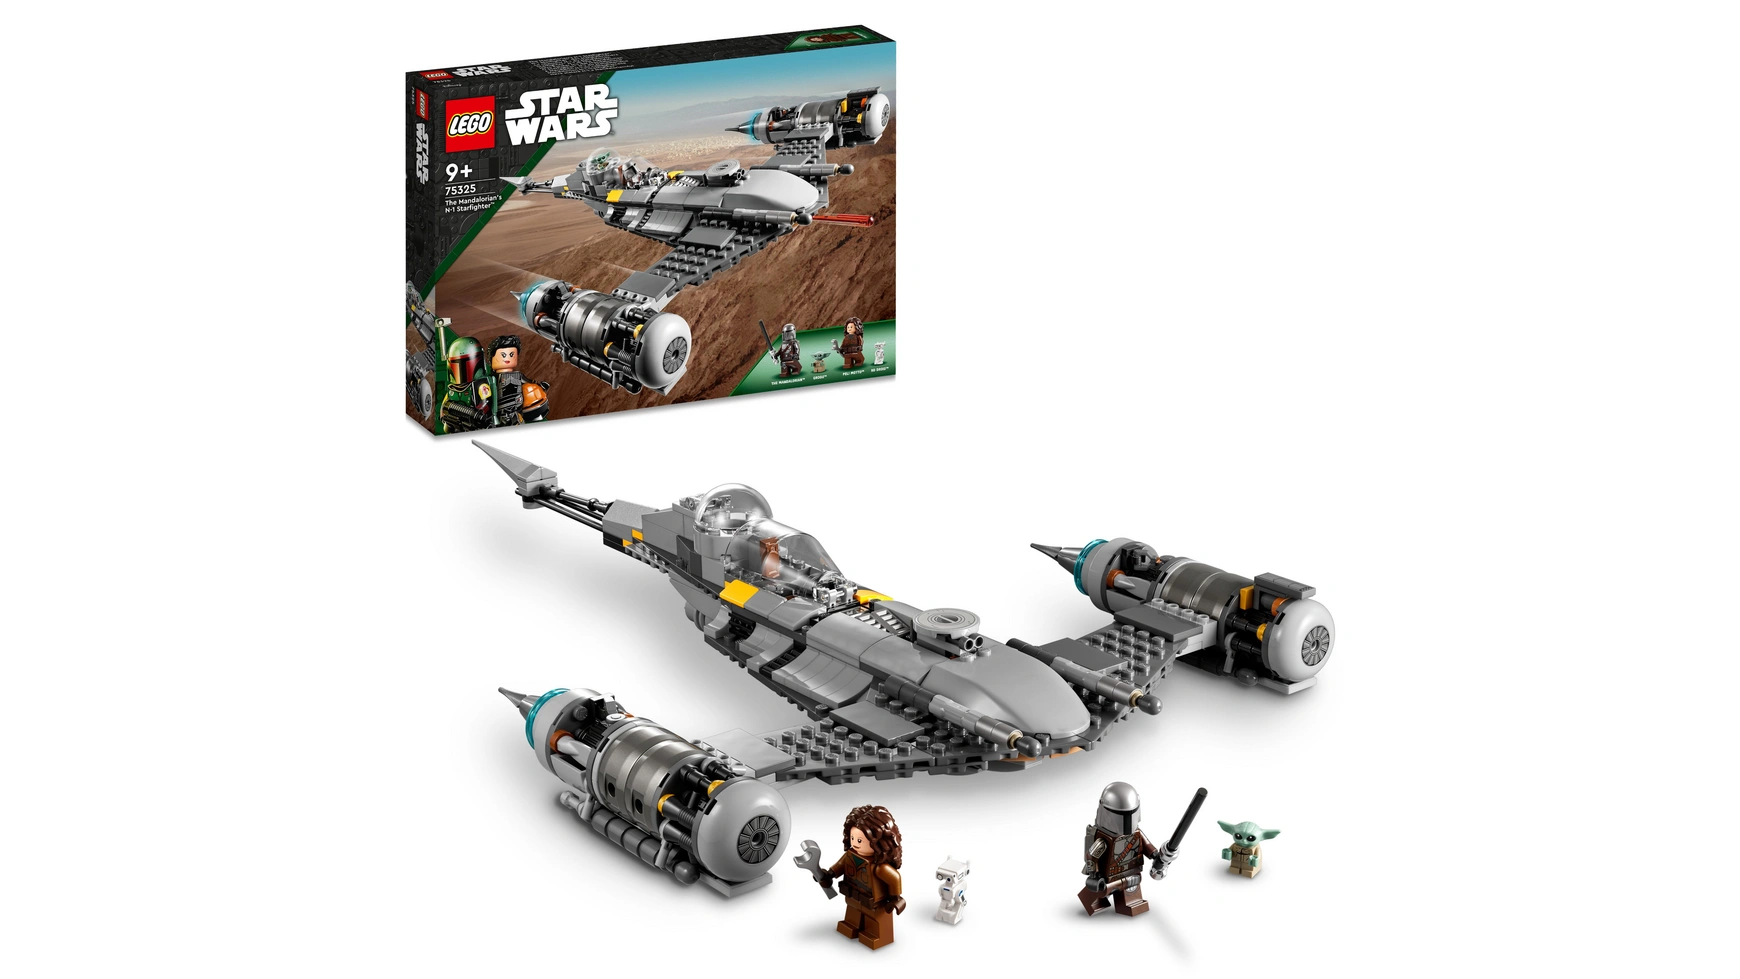 Lego Star Wars Набор Звездный истребитель Мандалорца Н-1 lego 75312 звездолет бобы фетта